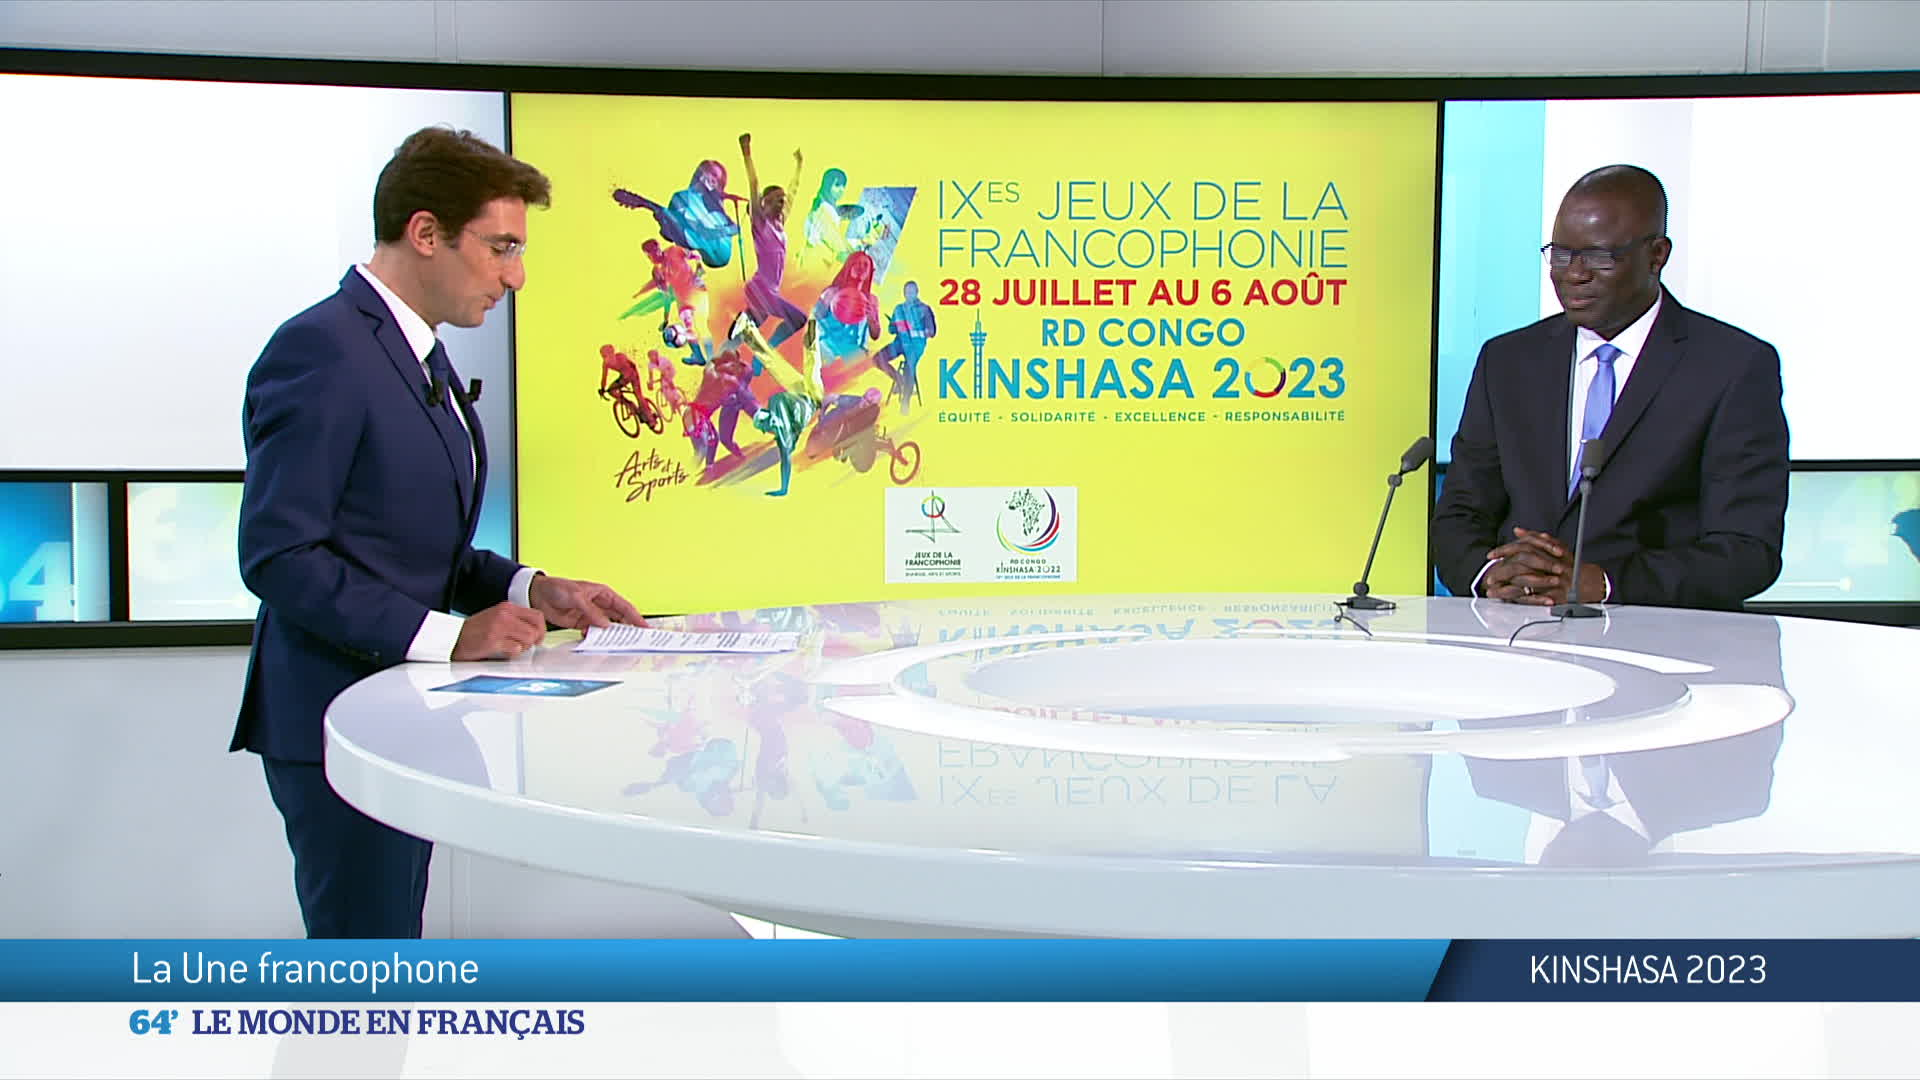 TV5MONDE named official broadcaster of Kinshasa 2023 Francophone Games